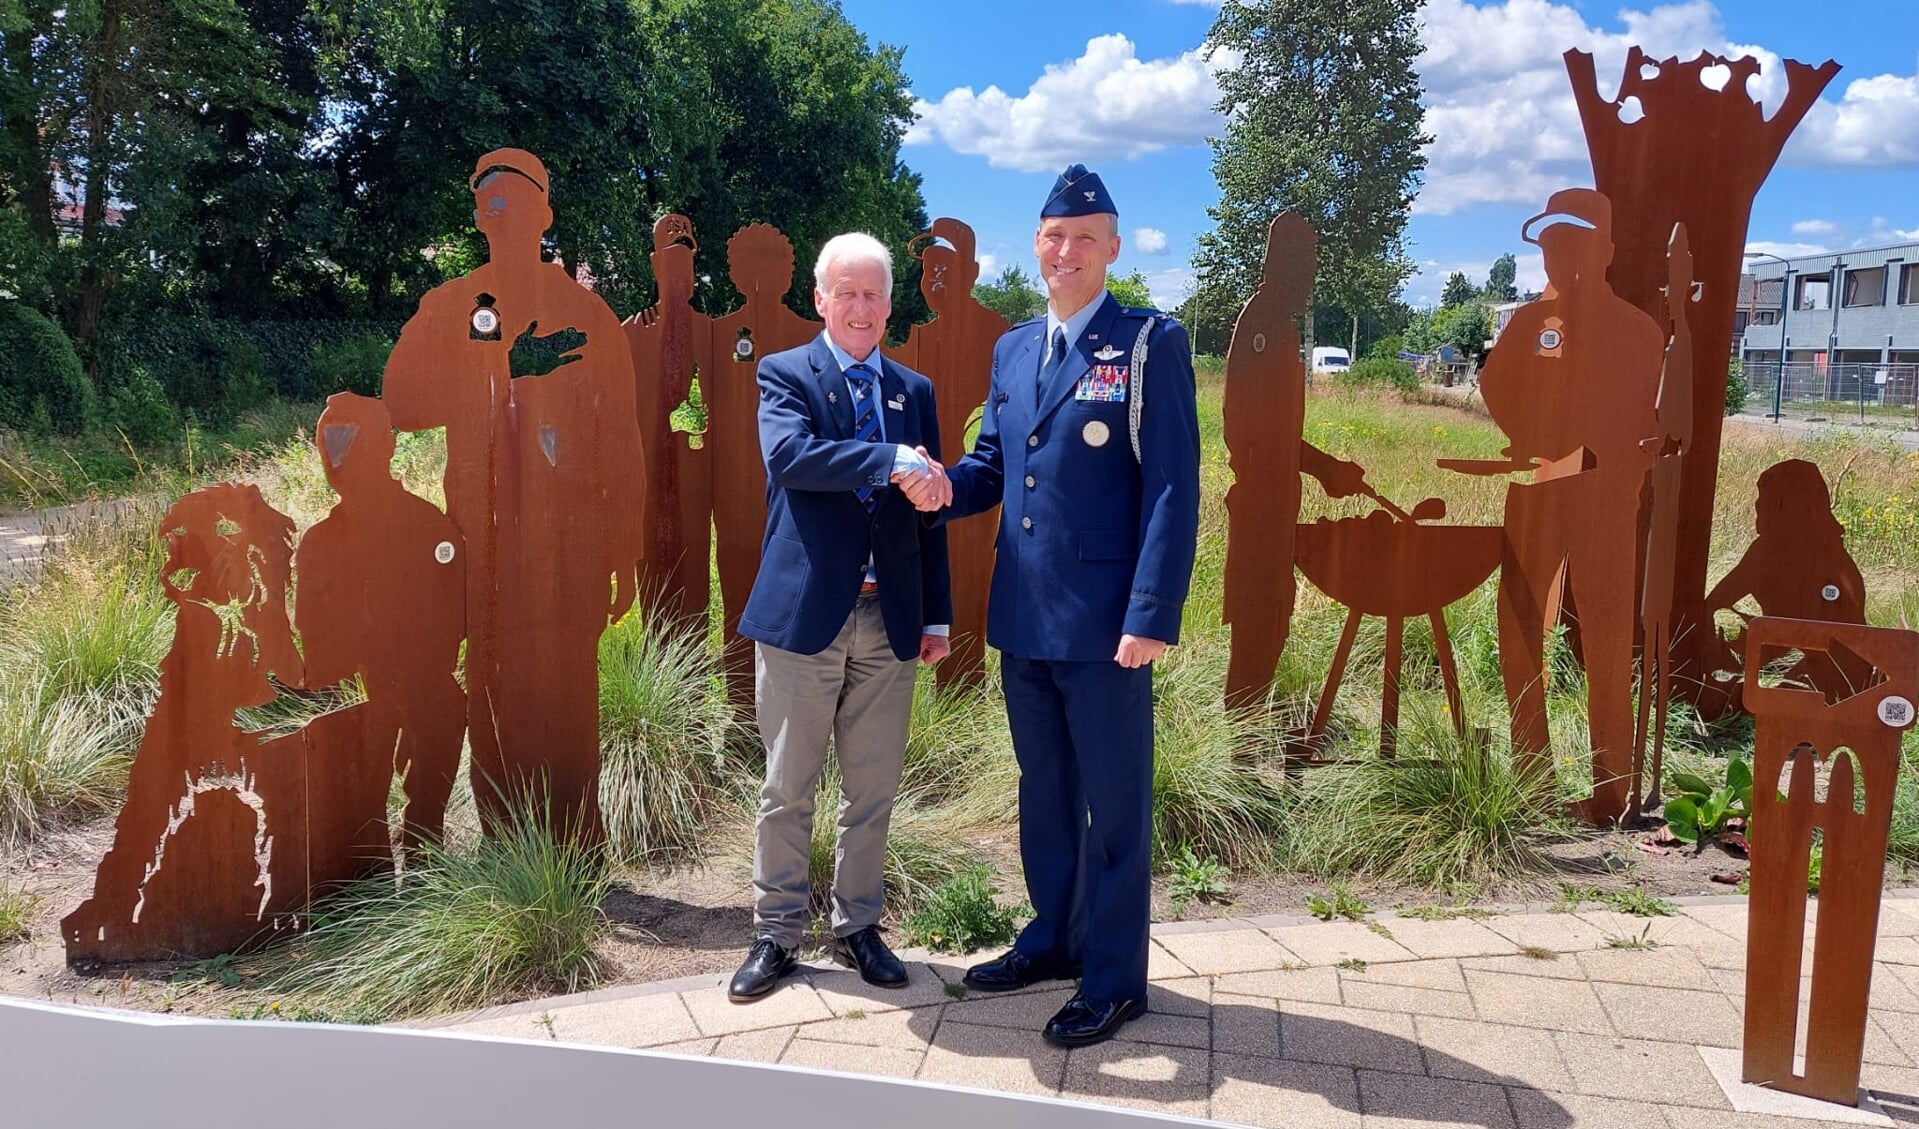 Kolonel Jansons en Gerrit van Rheenen bij het monument dat
herinnert aan de veertigjarige aanwezigheid van Amerikanen in
Soesterberg.